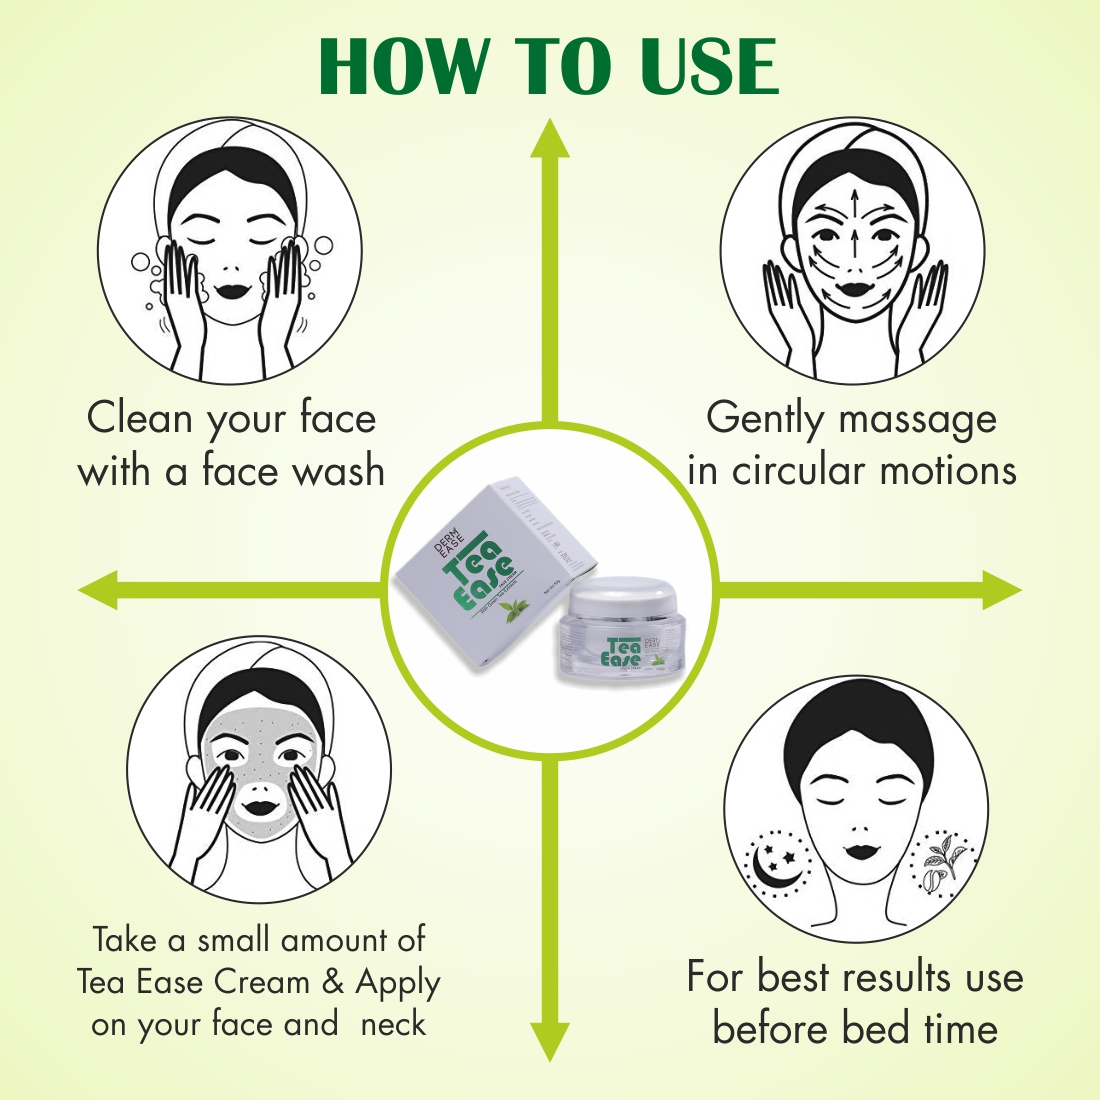 DERM EASE Tea Ease Green Tea Face Cream Combo